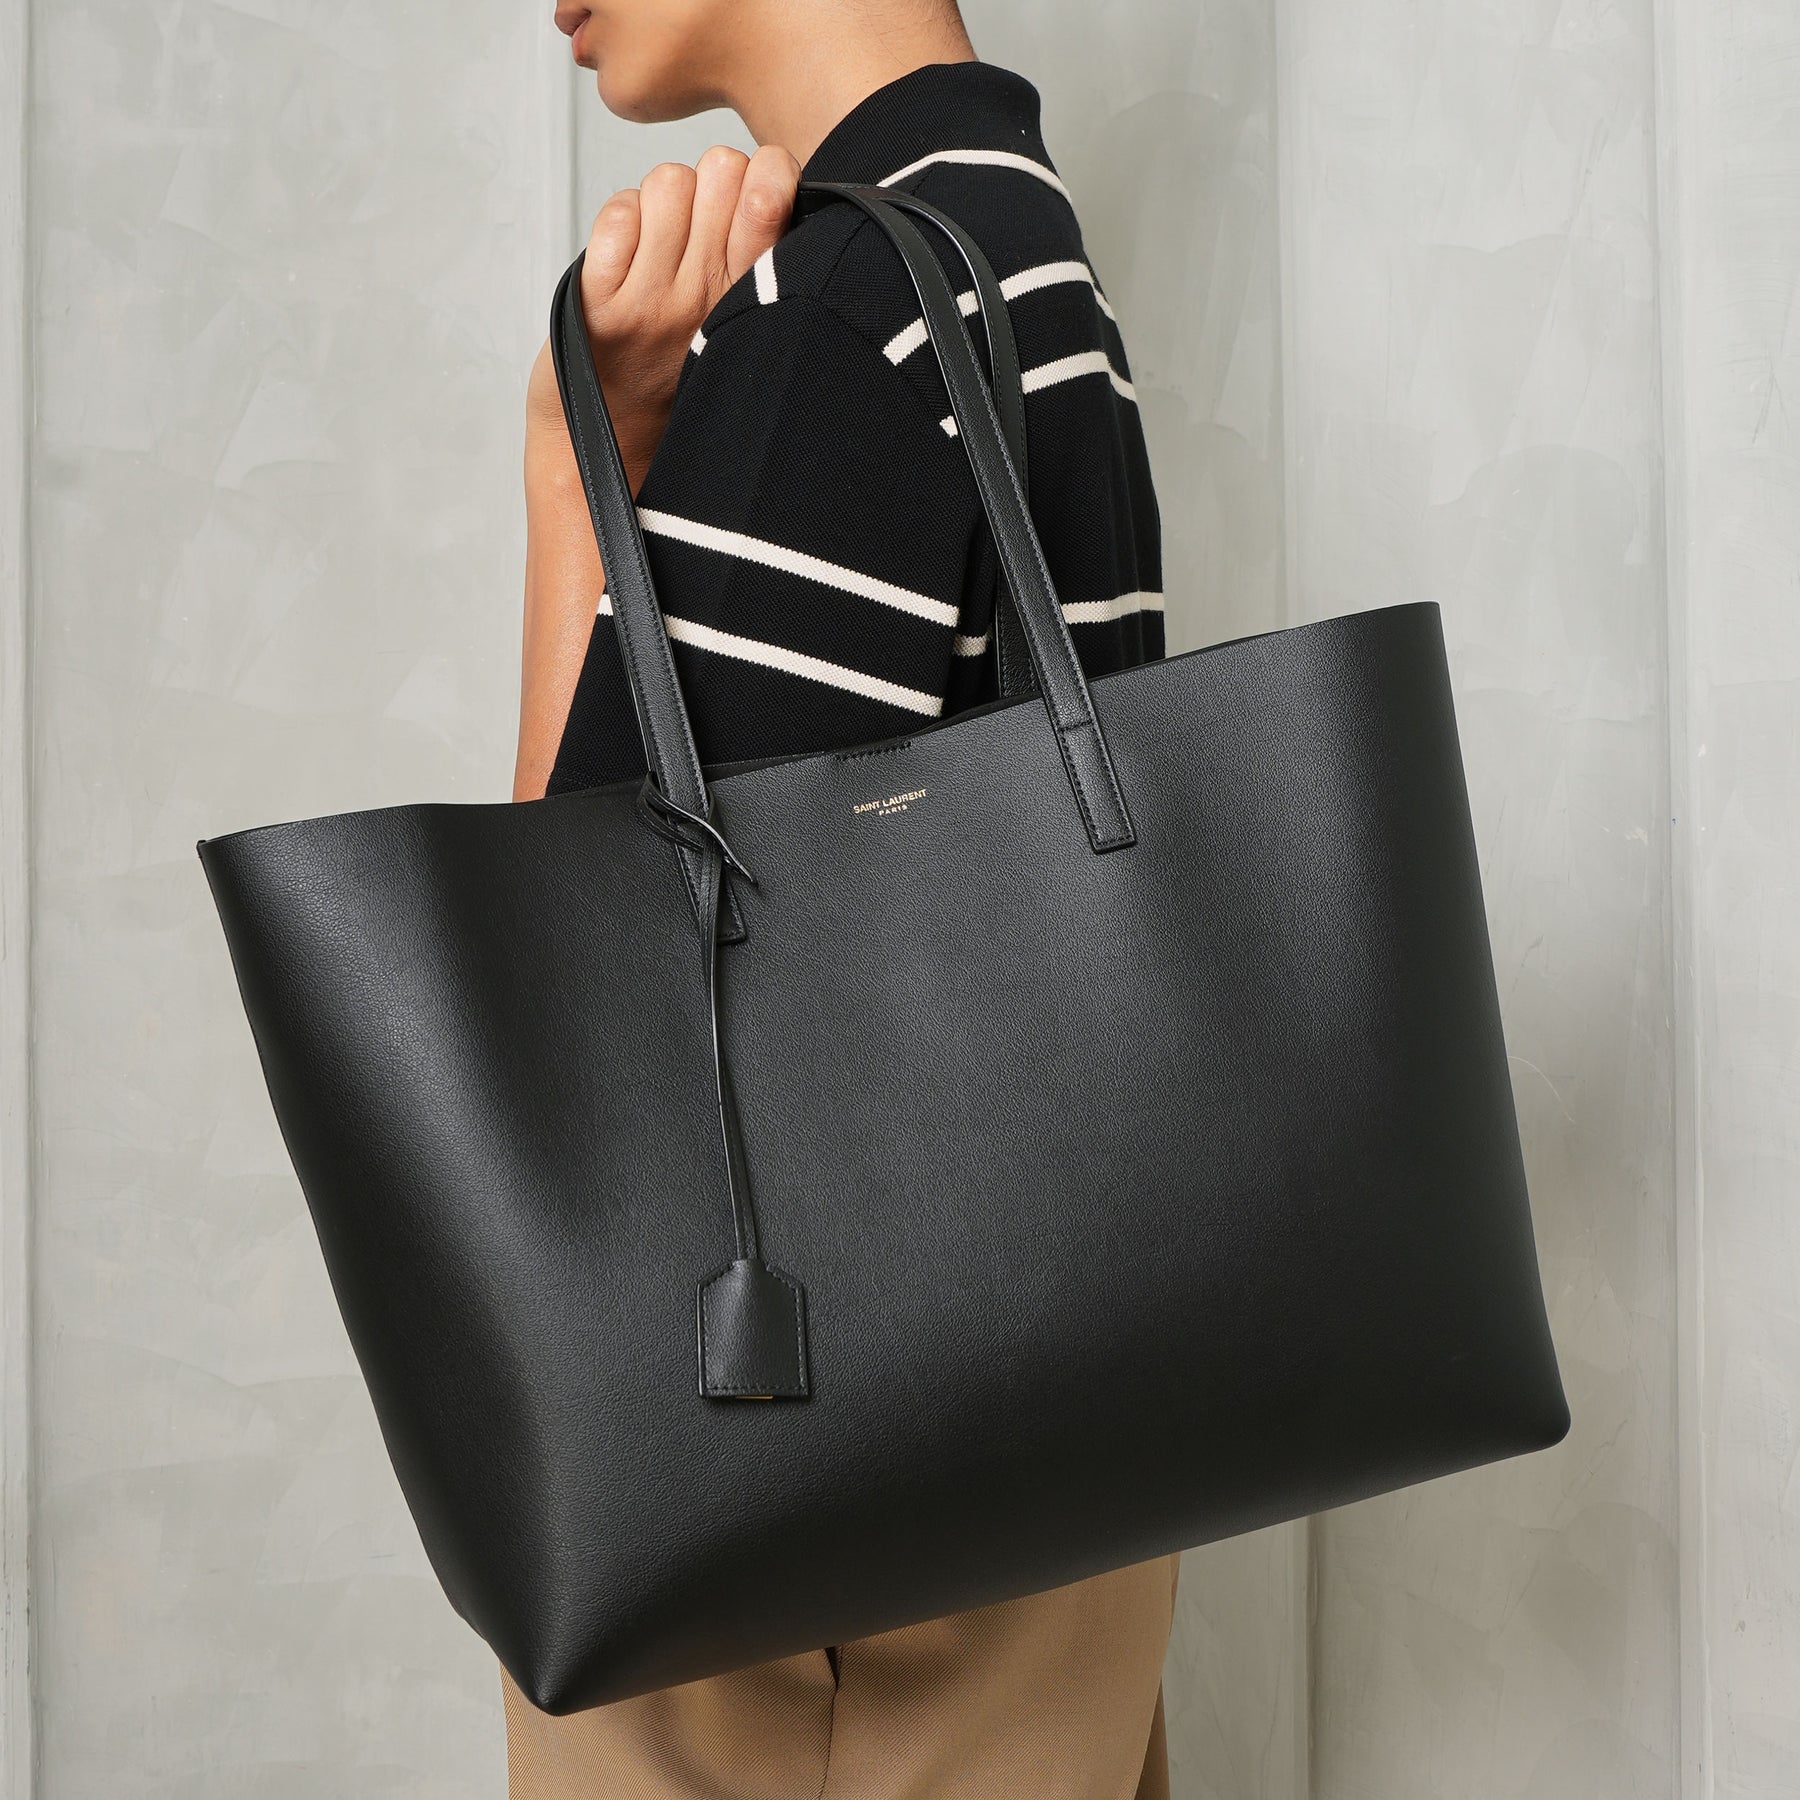 Leather Bag, Handmade Leather Bag, Handbag, Woman Leather Bag, Elegant  Leather Bag, Made in Italy Handbag - Etsy